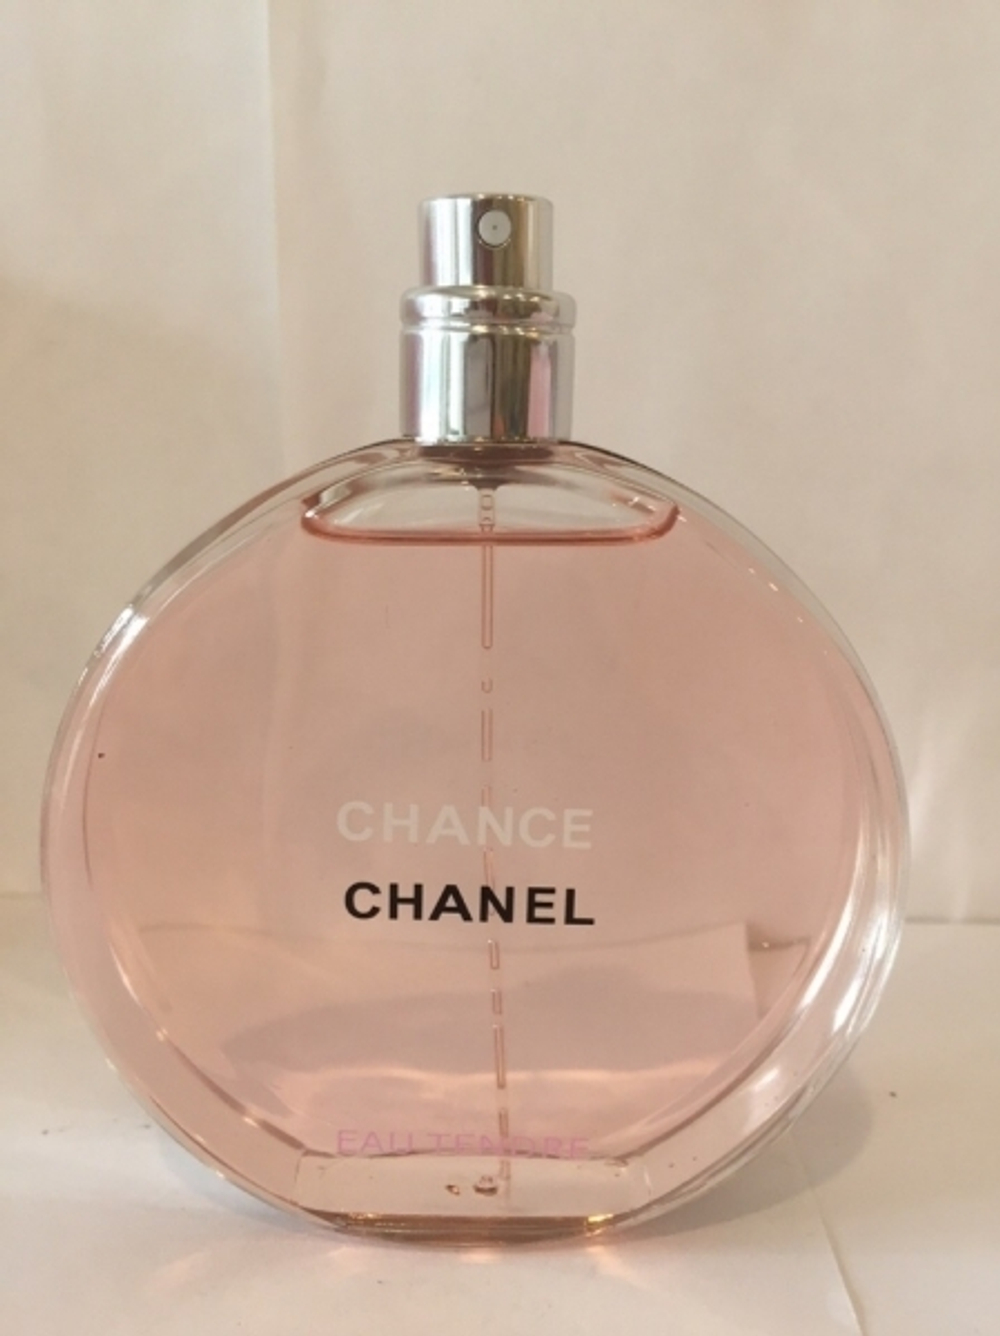 Chanel Chance Eau Tendre EDT (duty free парфюмерия) 100ml